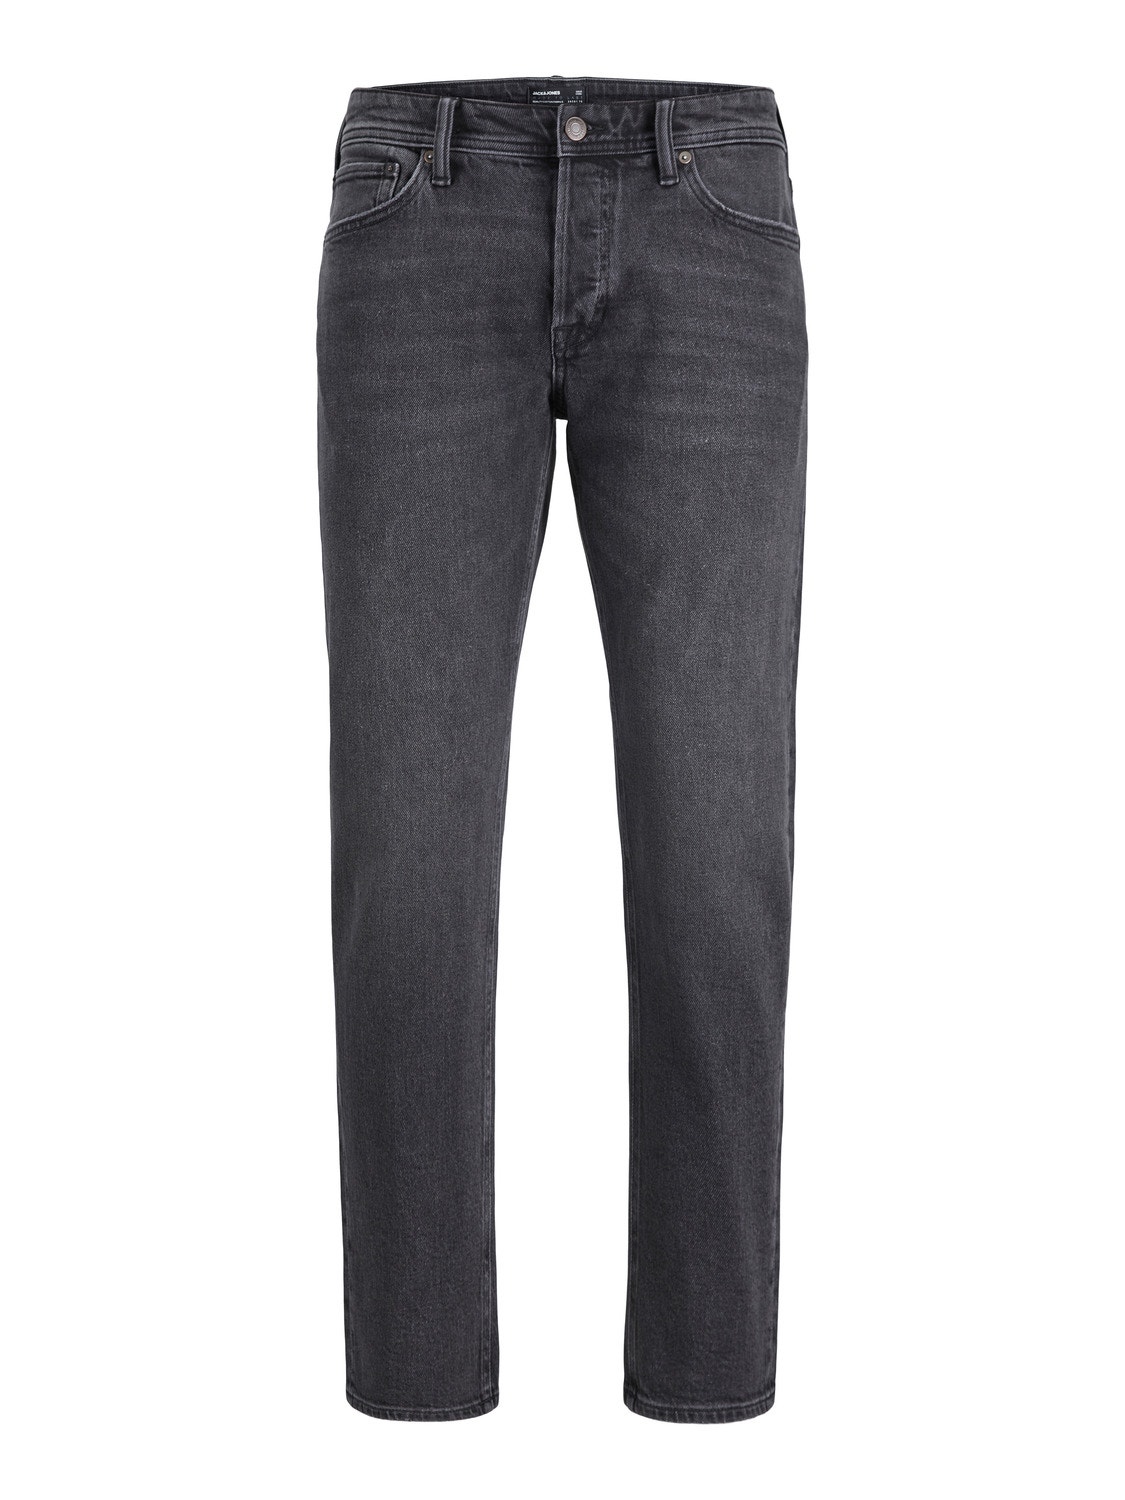 Jack & Jones Tapered fit - Cropped Jeans -Black Denim - 12243673